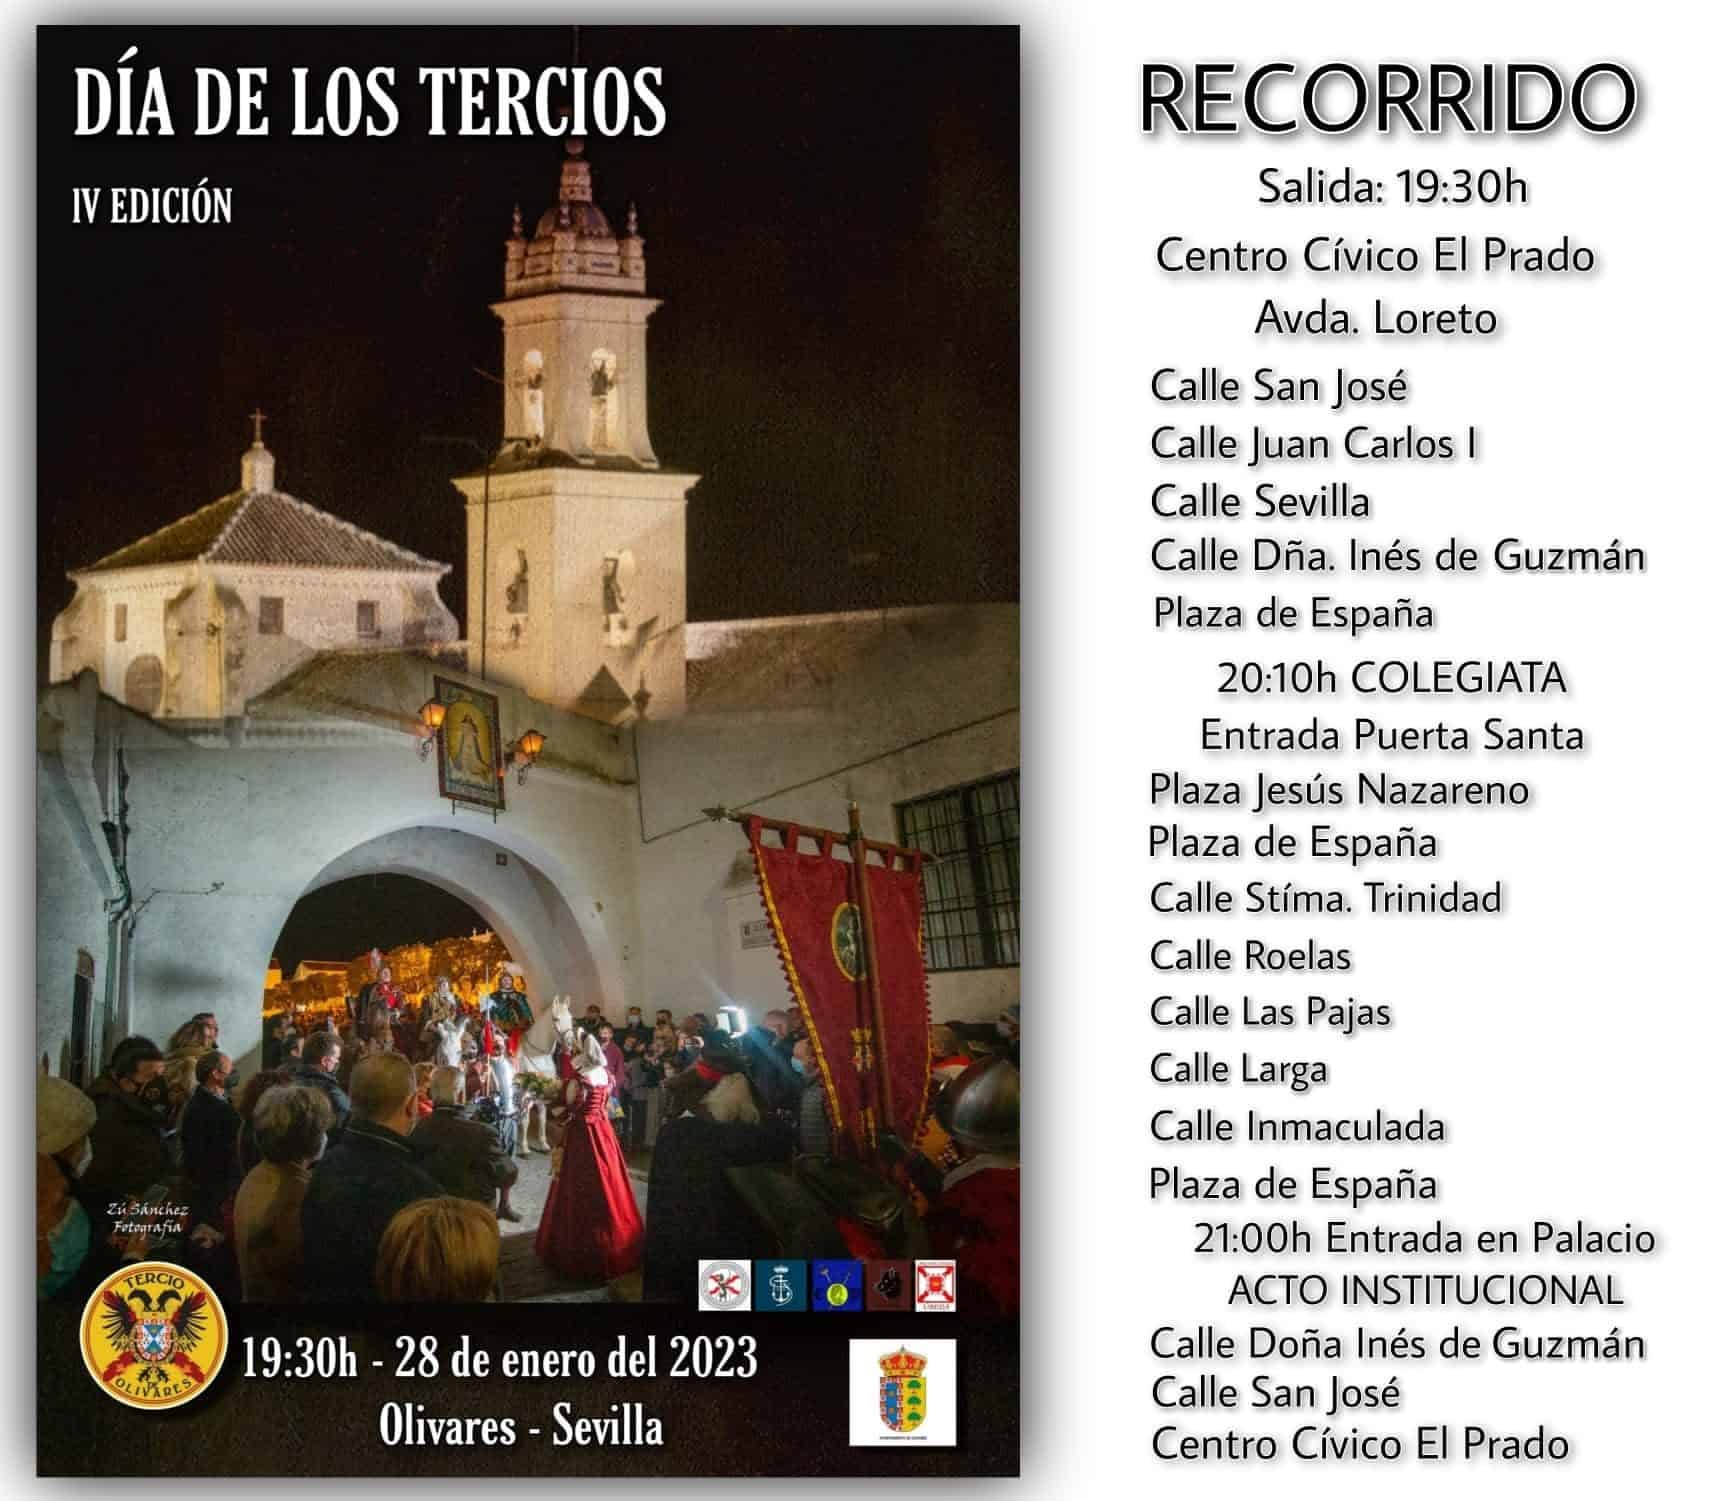 Día de los Tercios en Olivares (Sevilla). IV Edición, 28 de enero de 2023